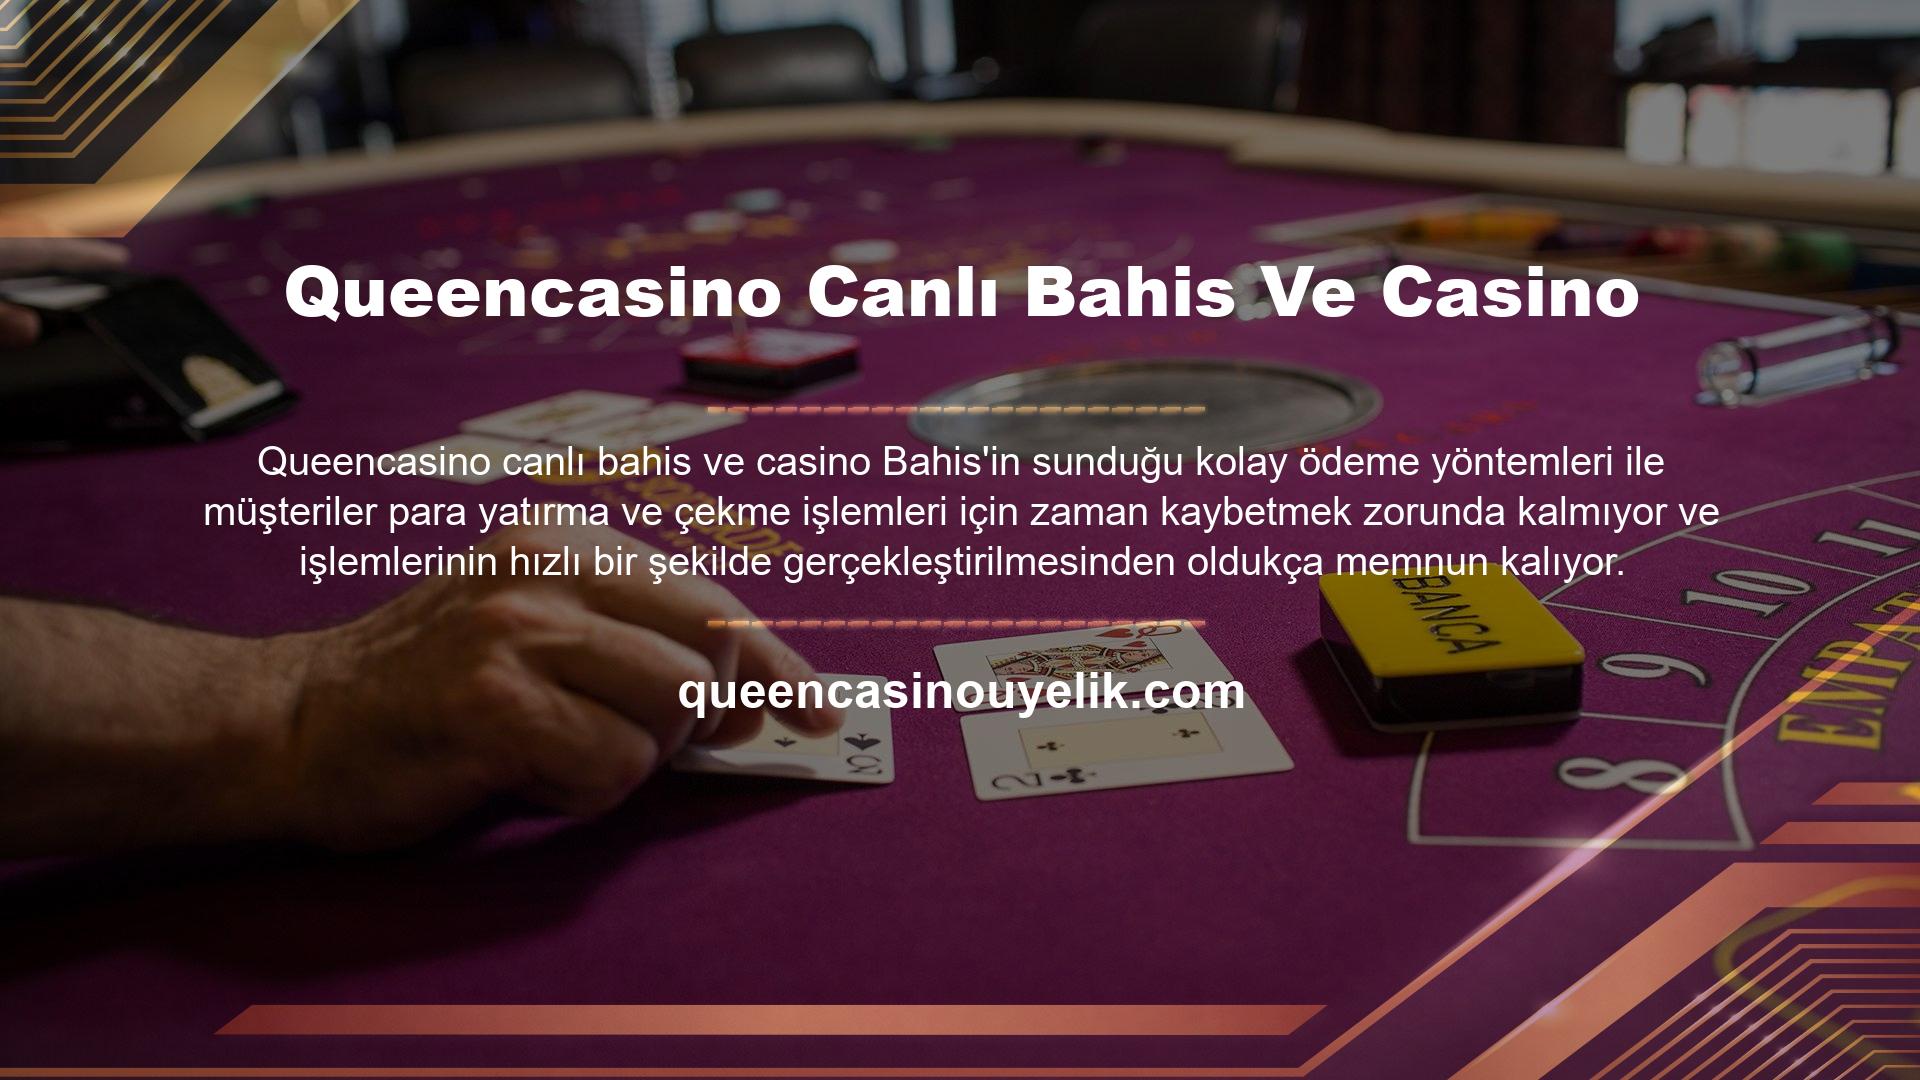 Queencasino Canlı Bahis Ve Casino